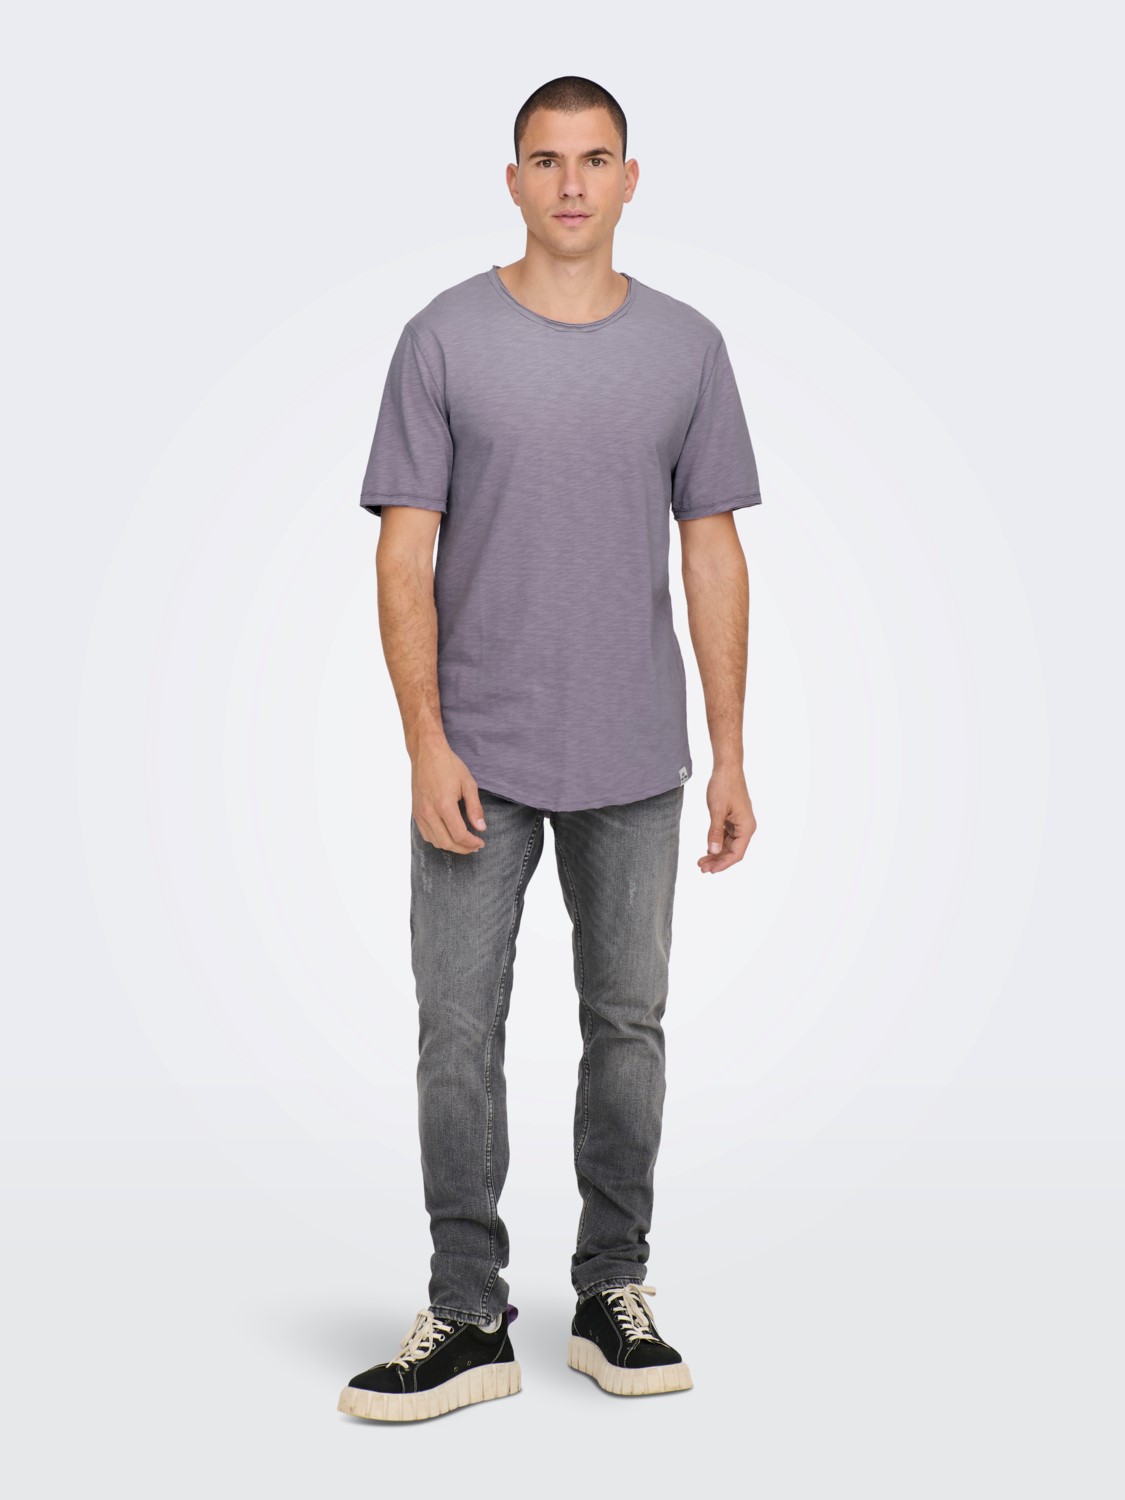 Se Benne Long Line Fit T-Shirt S/S - Purple Ash Small hos monomen